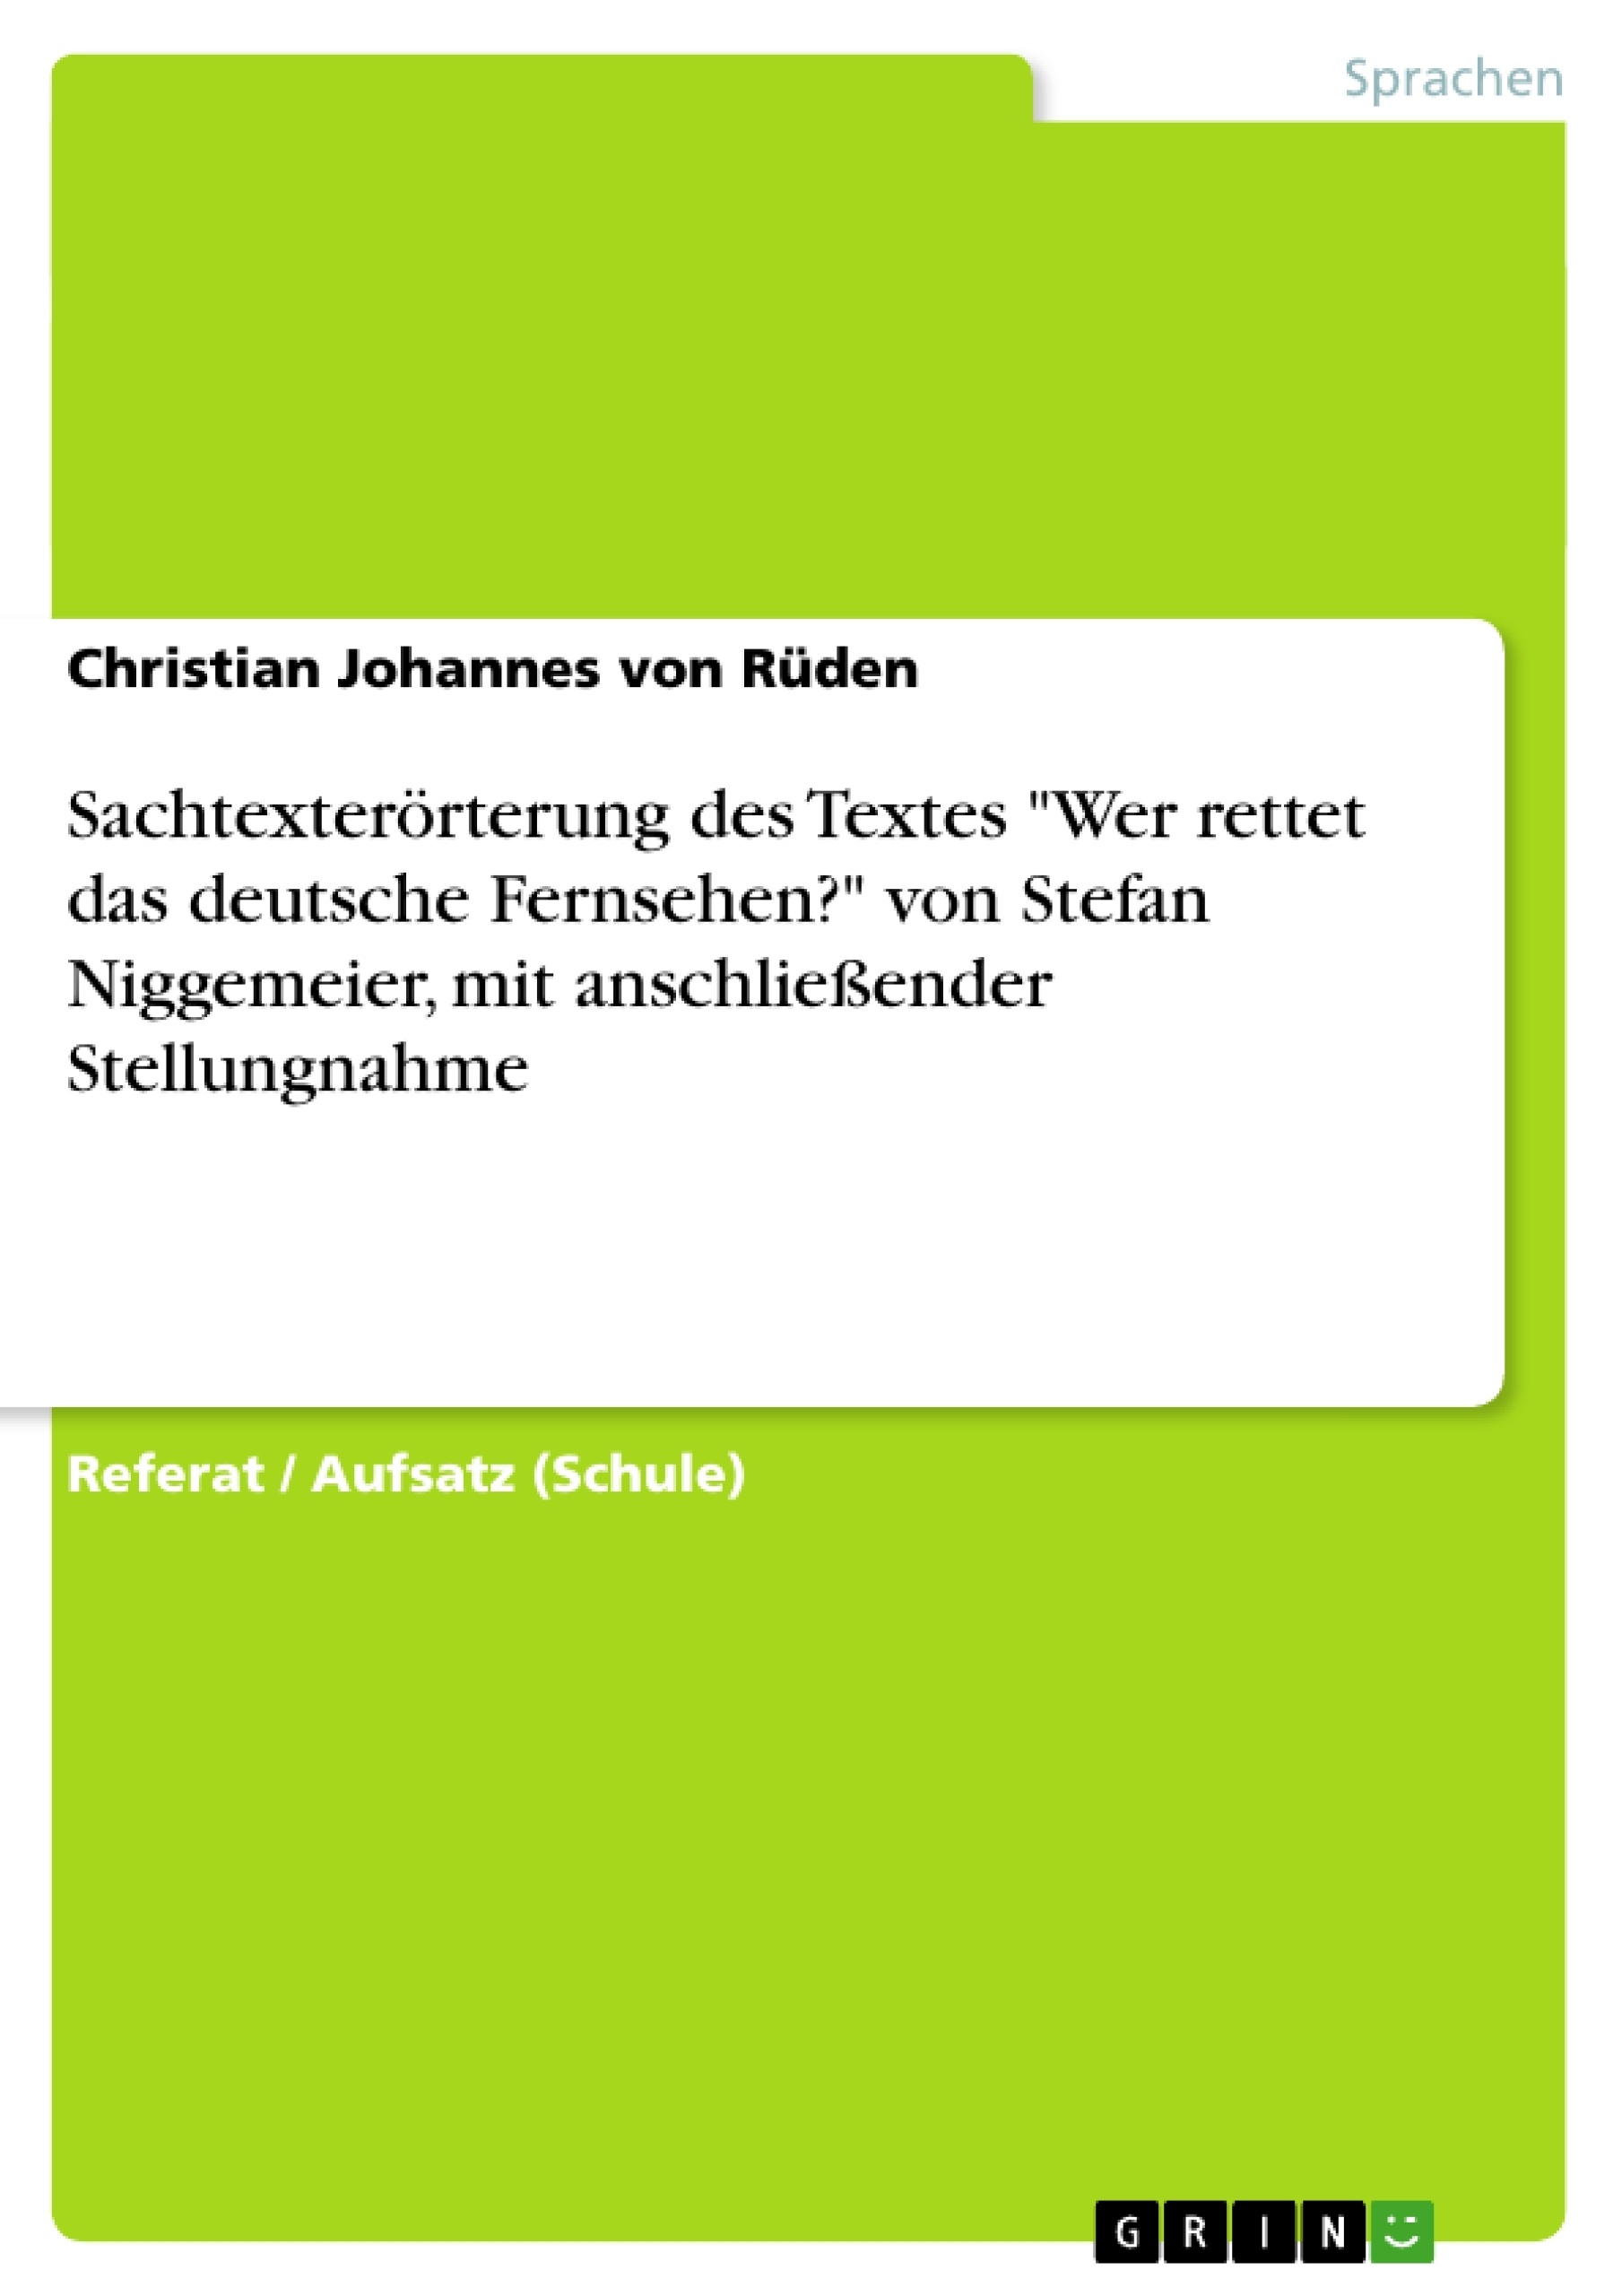 Titel: Sachtexterörterung des Textes "Wer rettet das deutsche Fernsehen?"